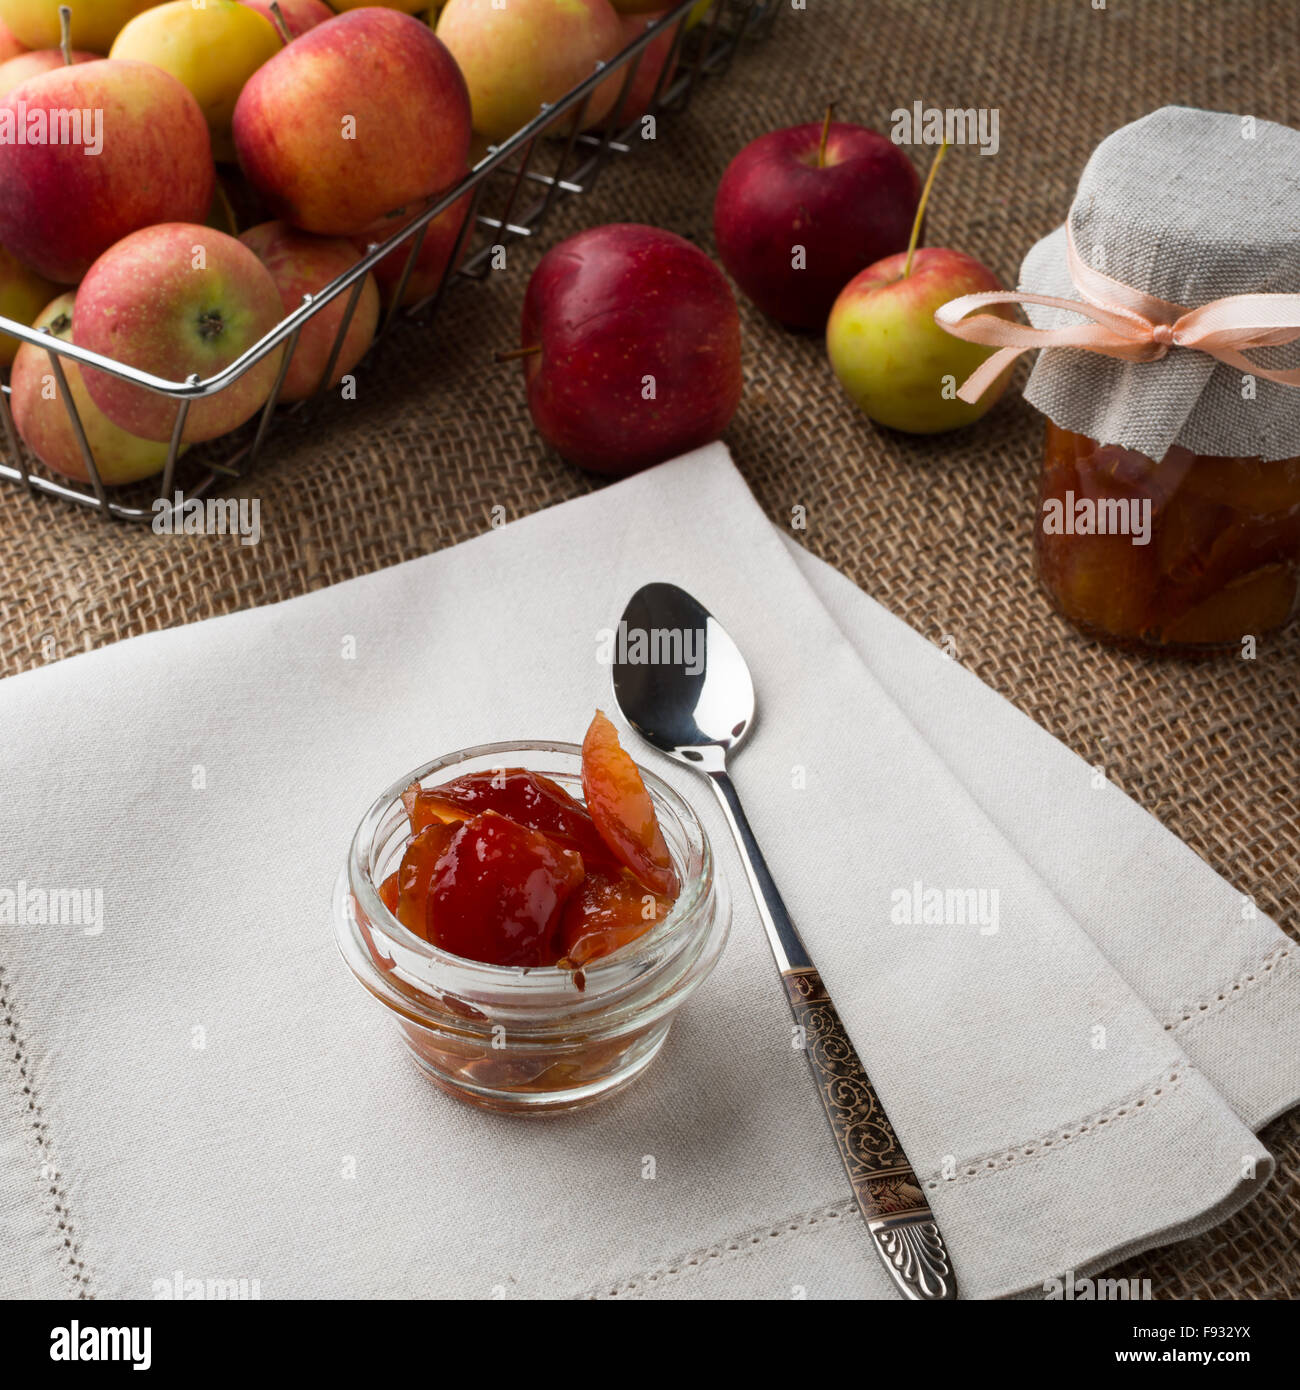 Il vasetto di vetro di marmellata di mele, cucchiaio, un vasetto di marmellata di arance, biancheria igienico e mele in filo metallico cesto su una tela coperti da tavola, square. Foto Stock